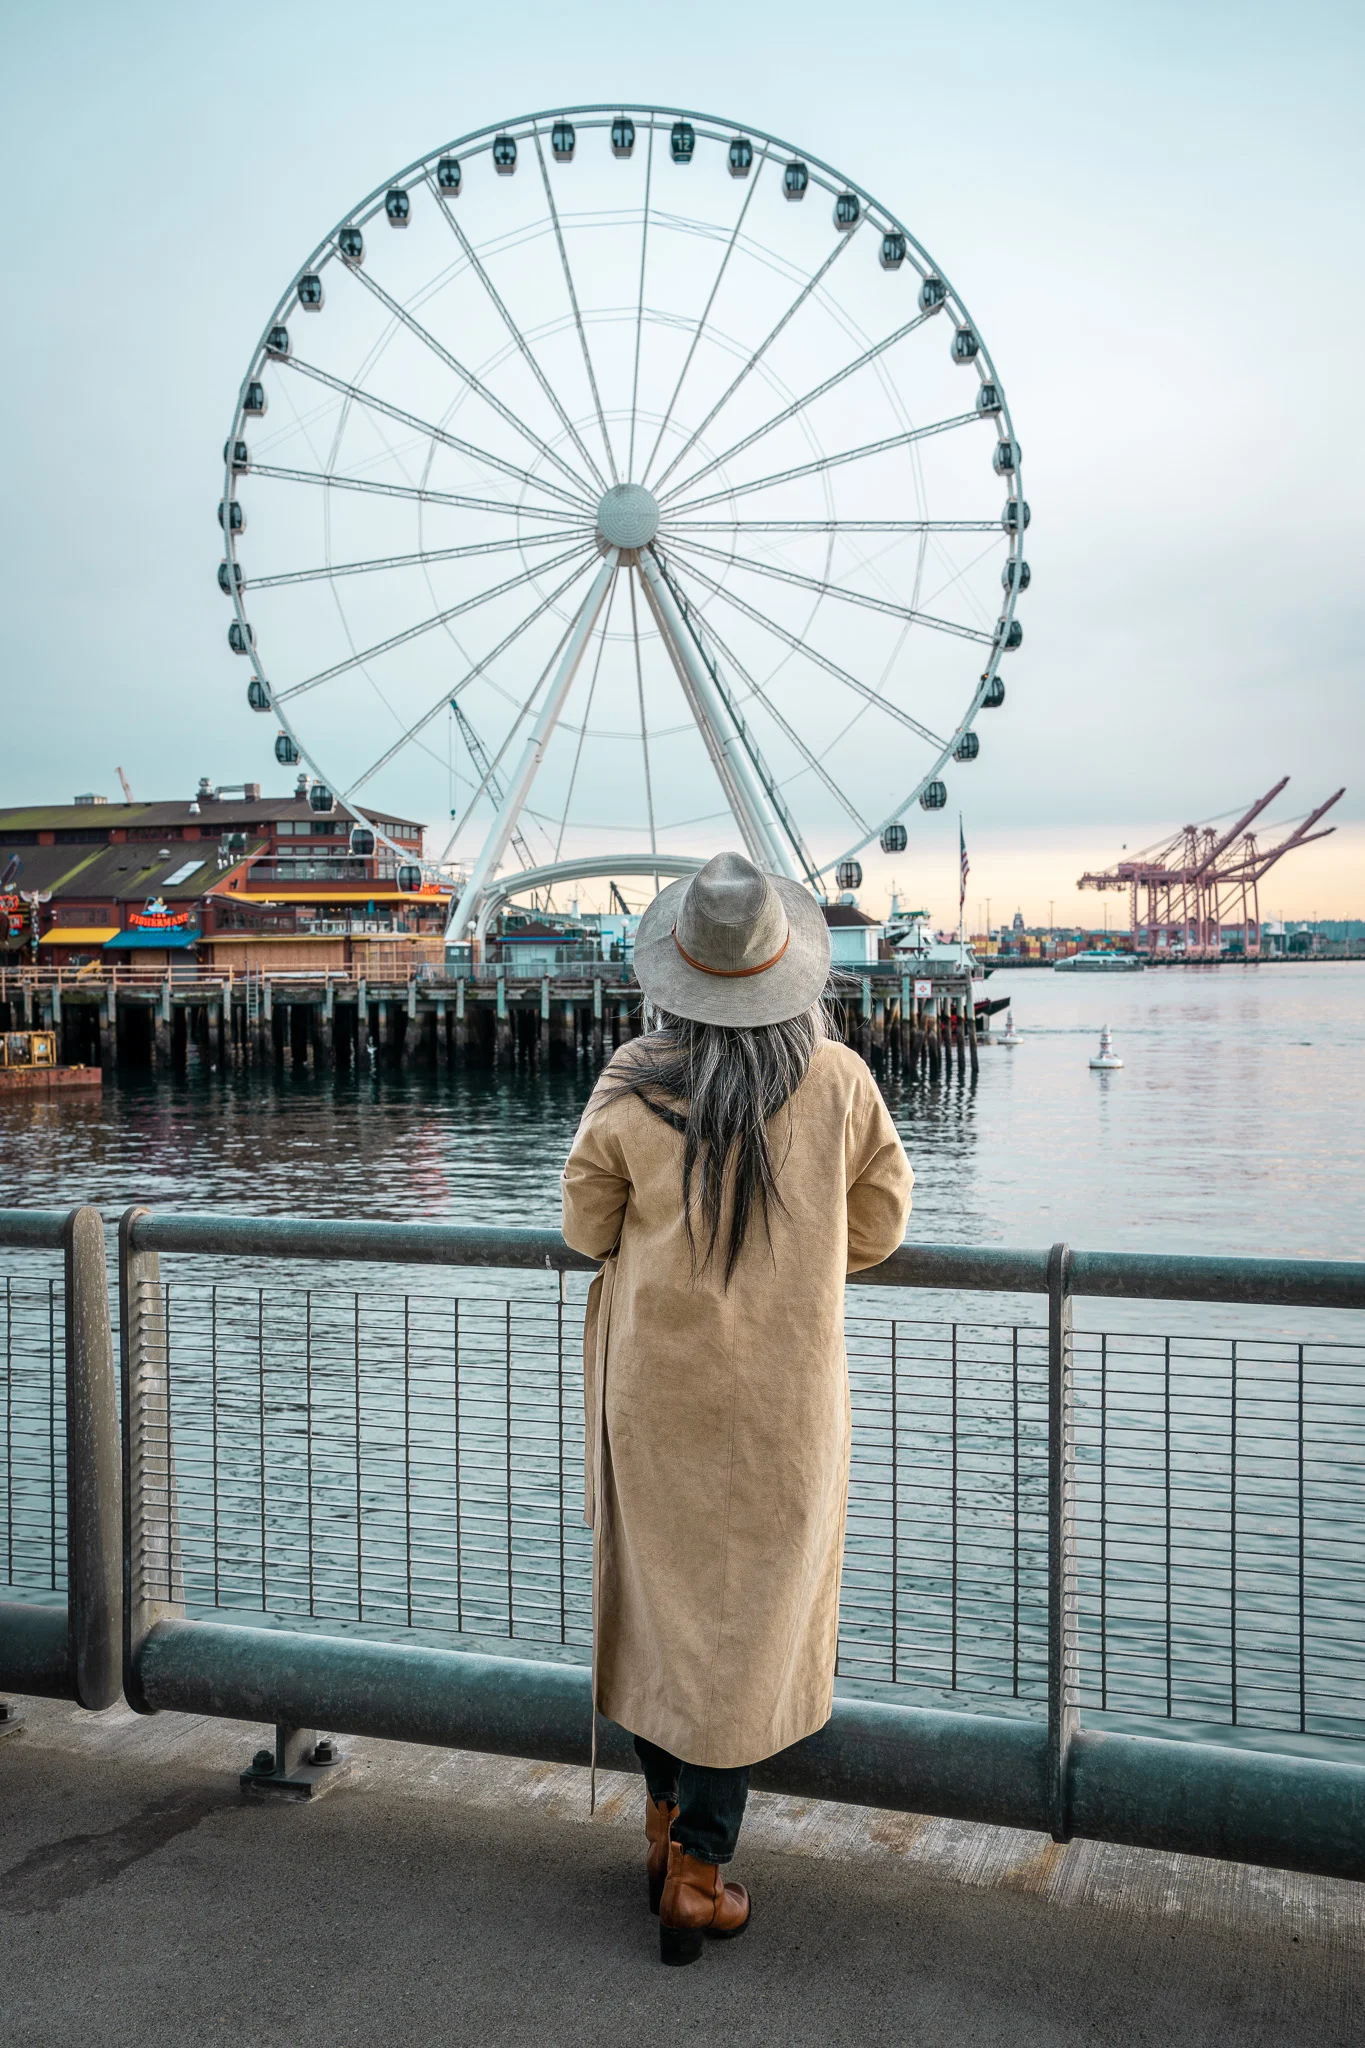 Seattle Great Wheel Ferris Wheel at Pier 57 Wallaroo Hats